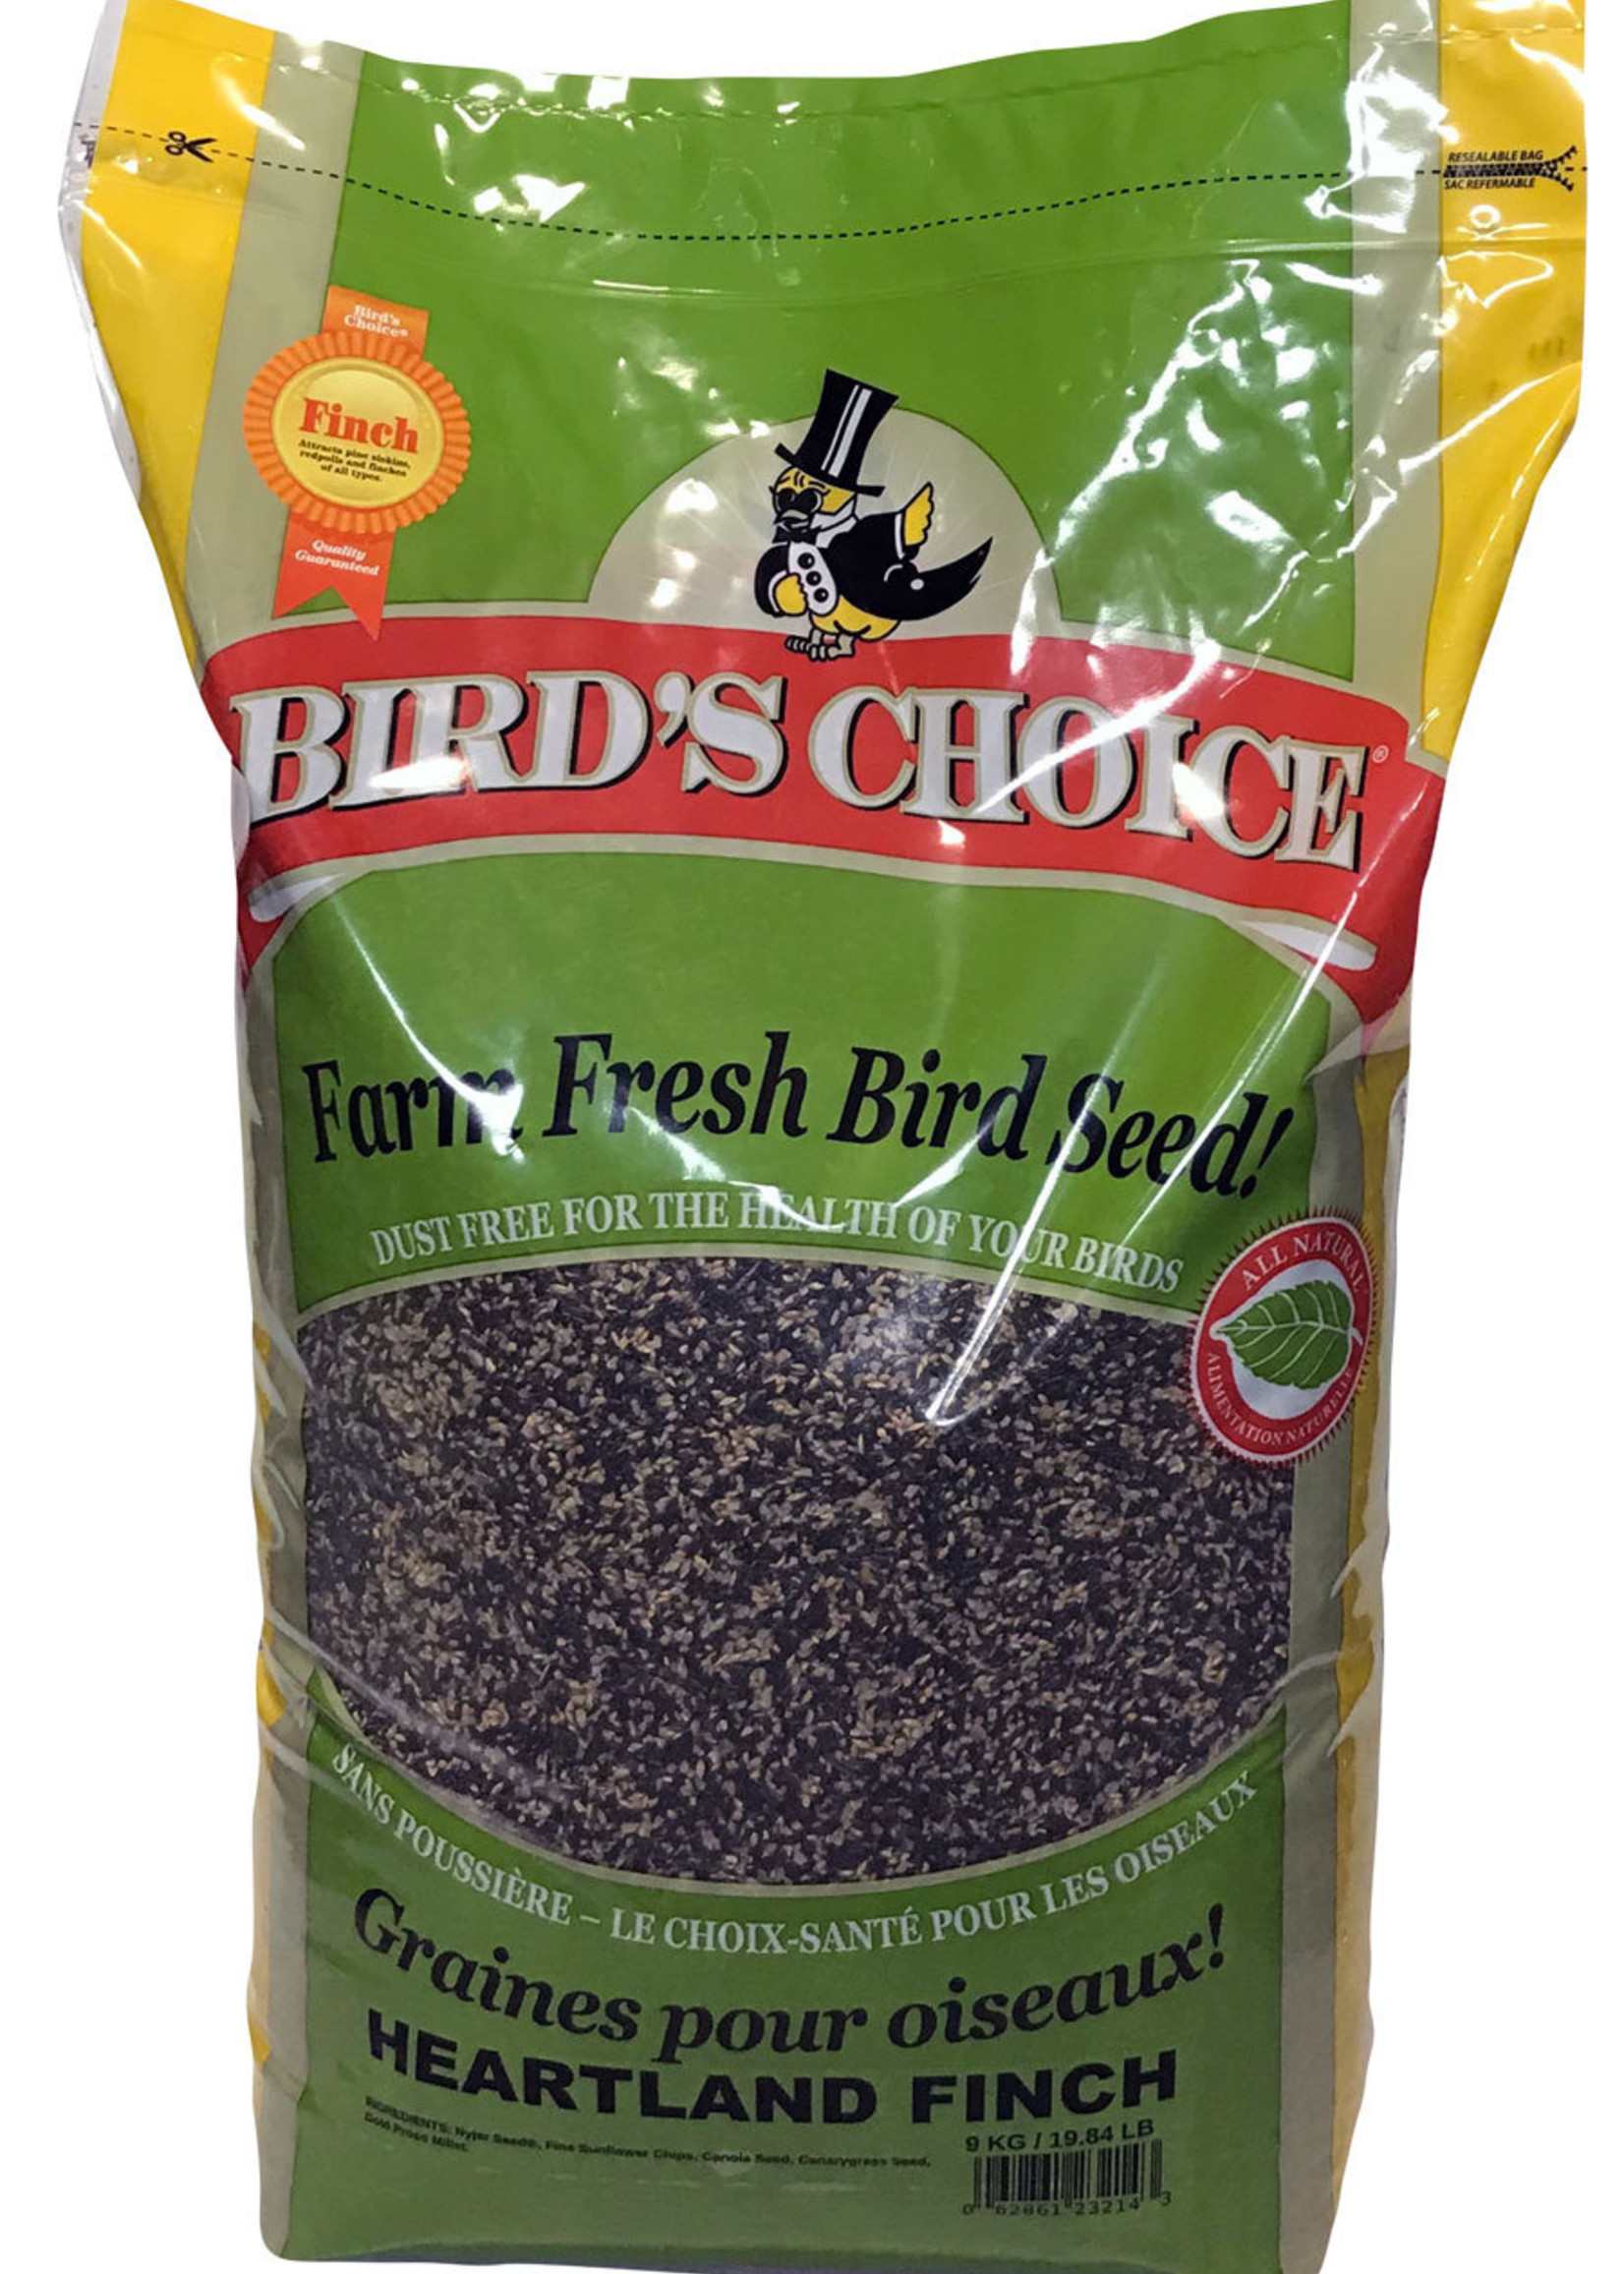 Bird's Choice Heartland Finch blend